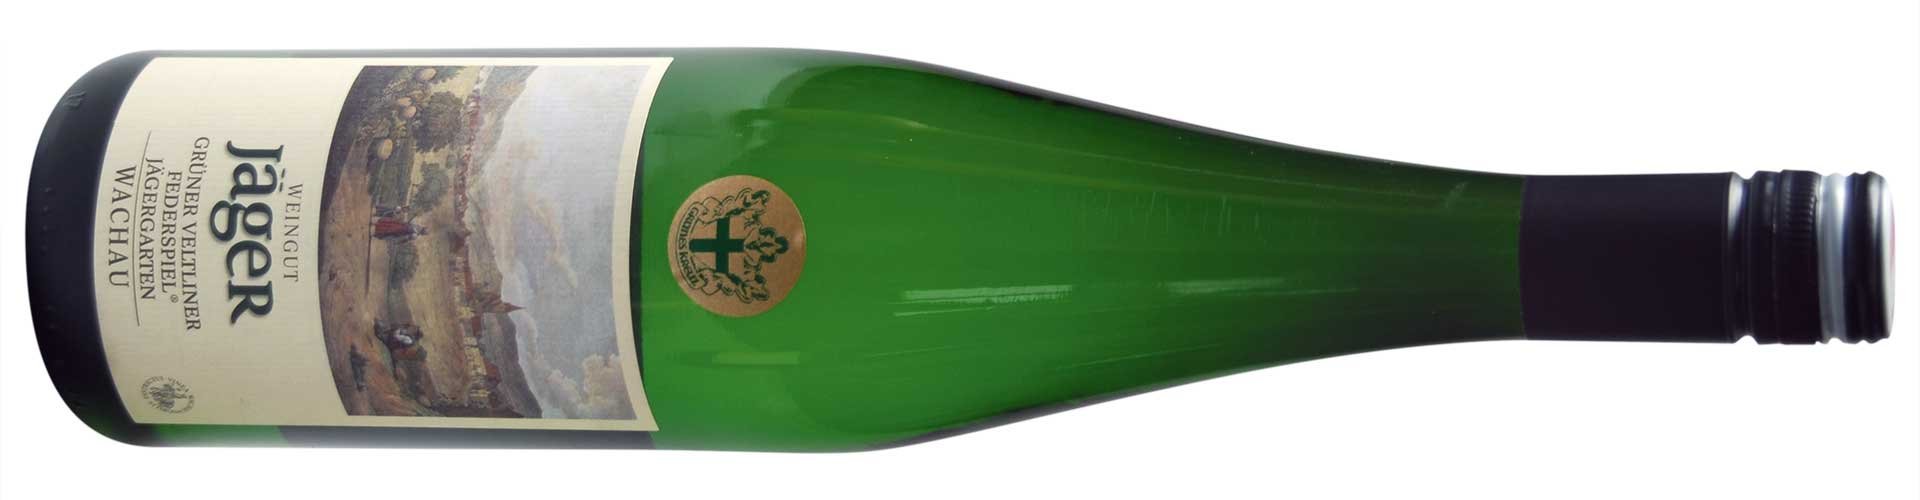 Der weiße Charity-Edition-Wein ist ein Grüner Veltliner Federspiel 2017 aus Weißenkirchen.